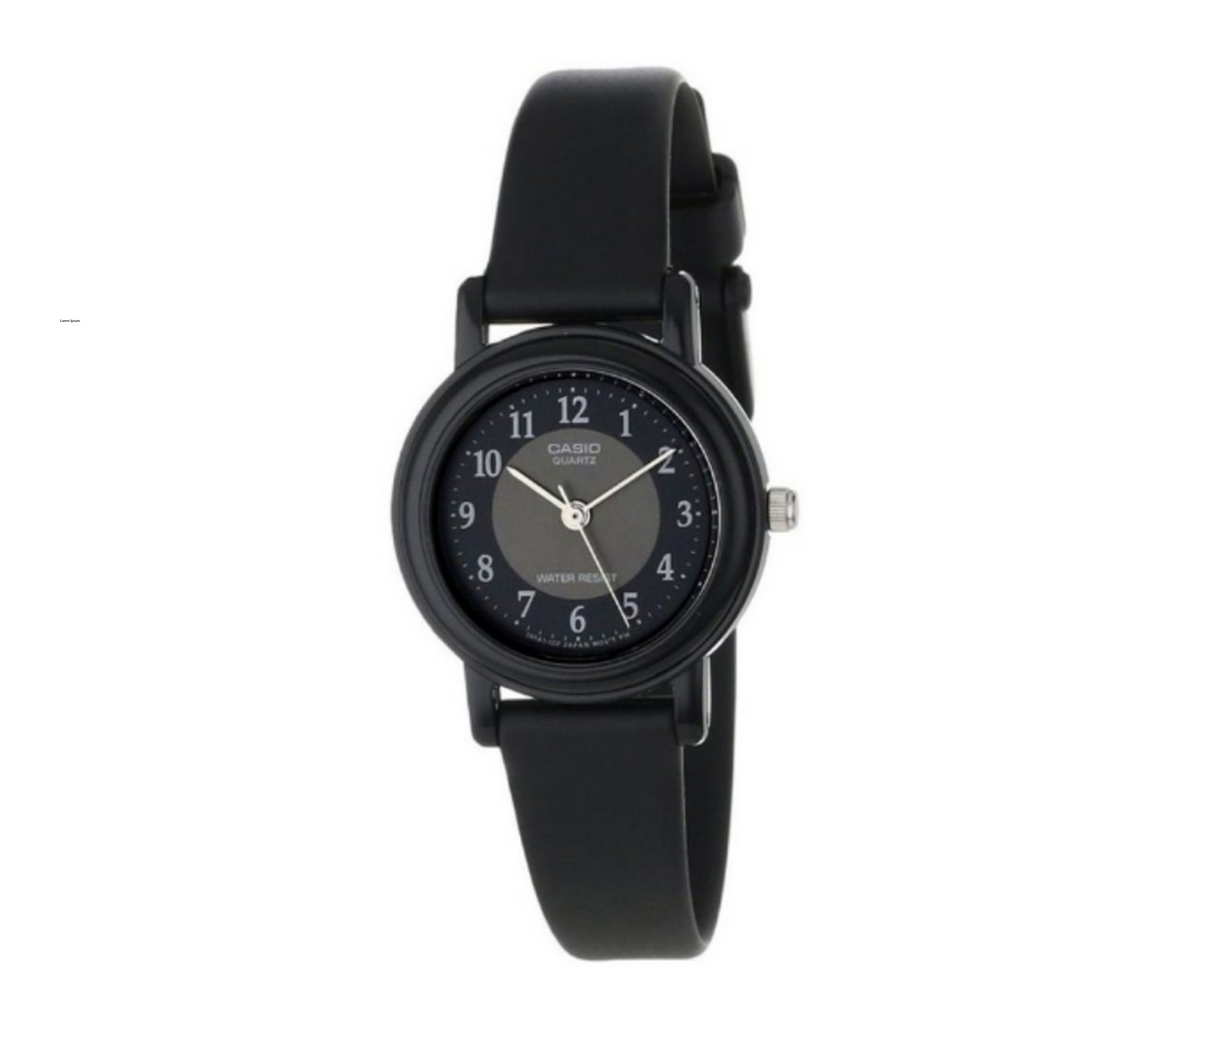 Reloj análogo negro LQ-139A-1B3 Casio